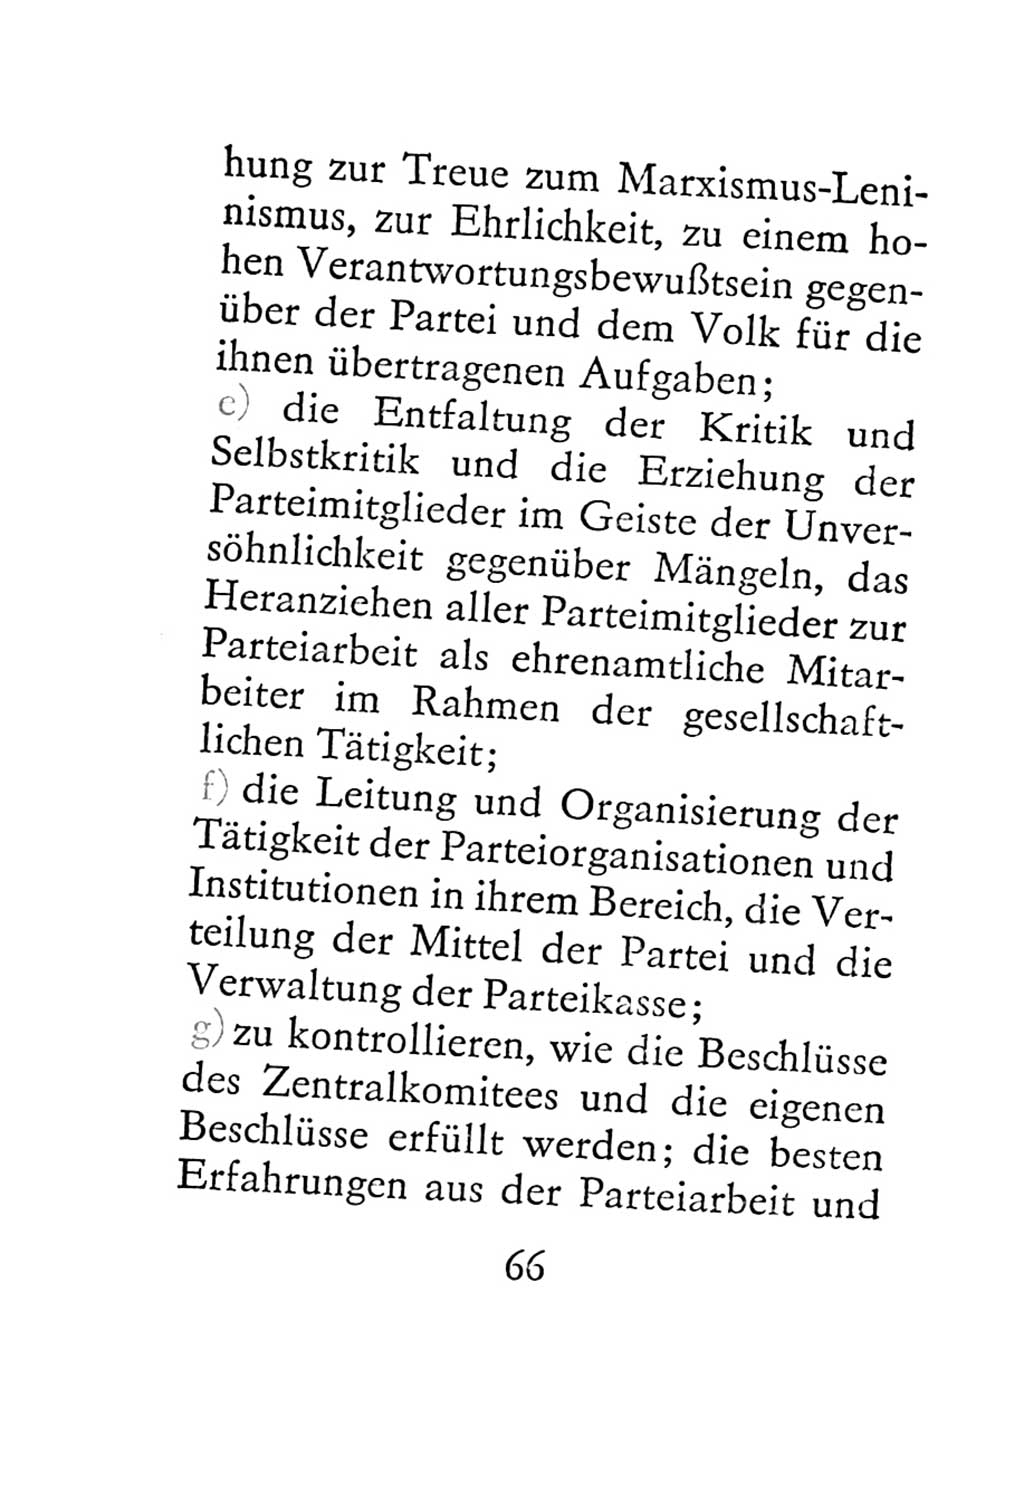 Statut der Sozialistischen Einheitspartei Deutschlands (SED) 1967, Seite 66 (St. SED DDR 1967, S. 66)